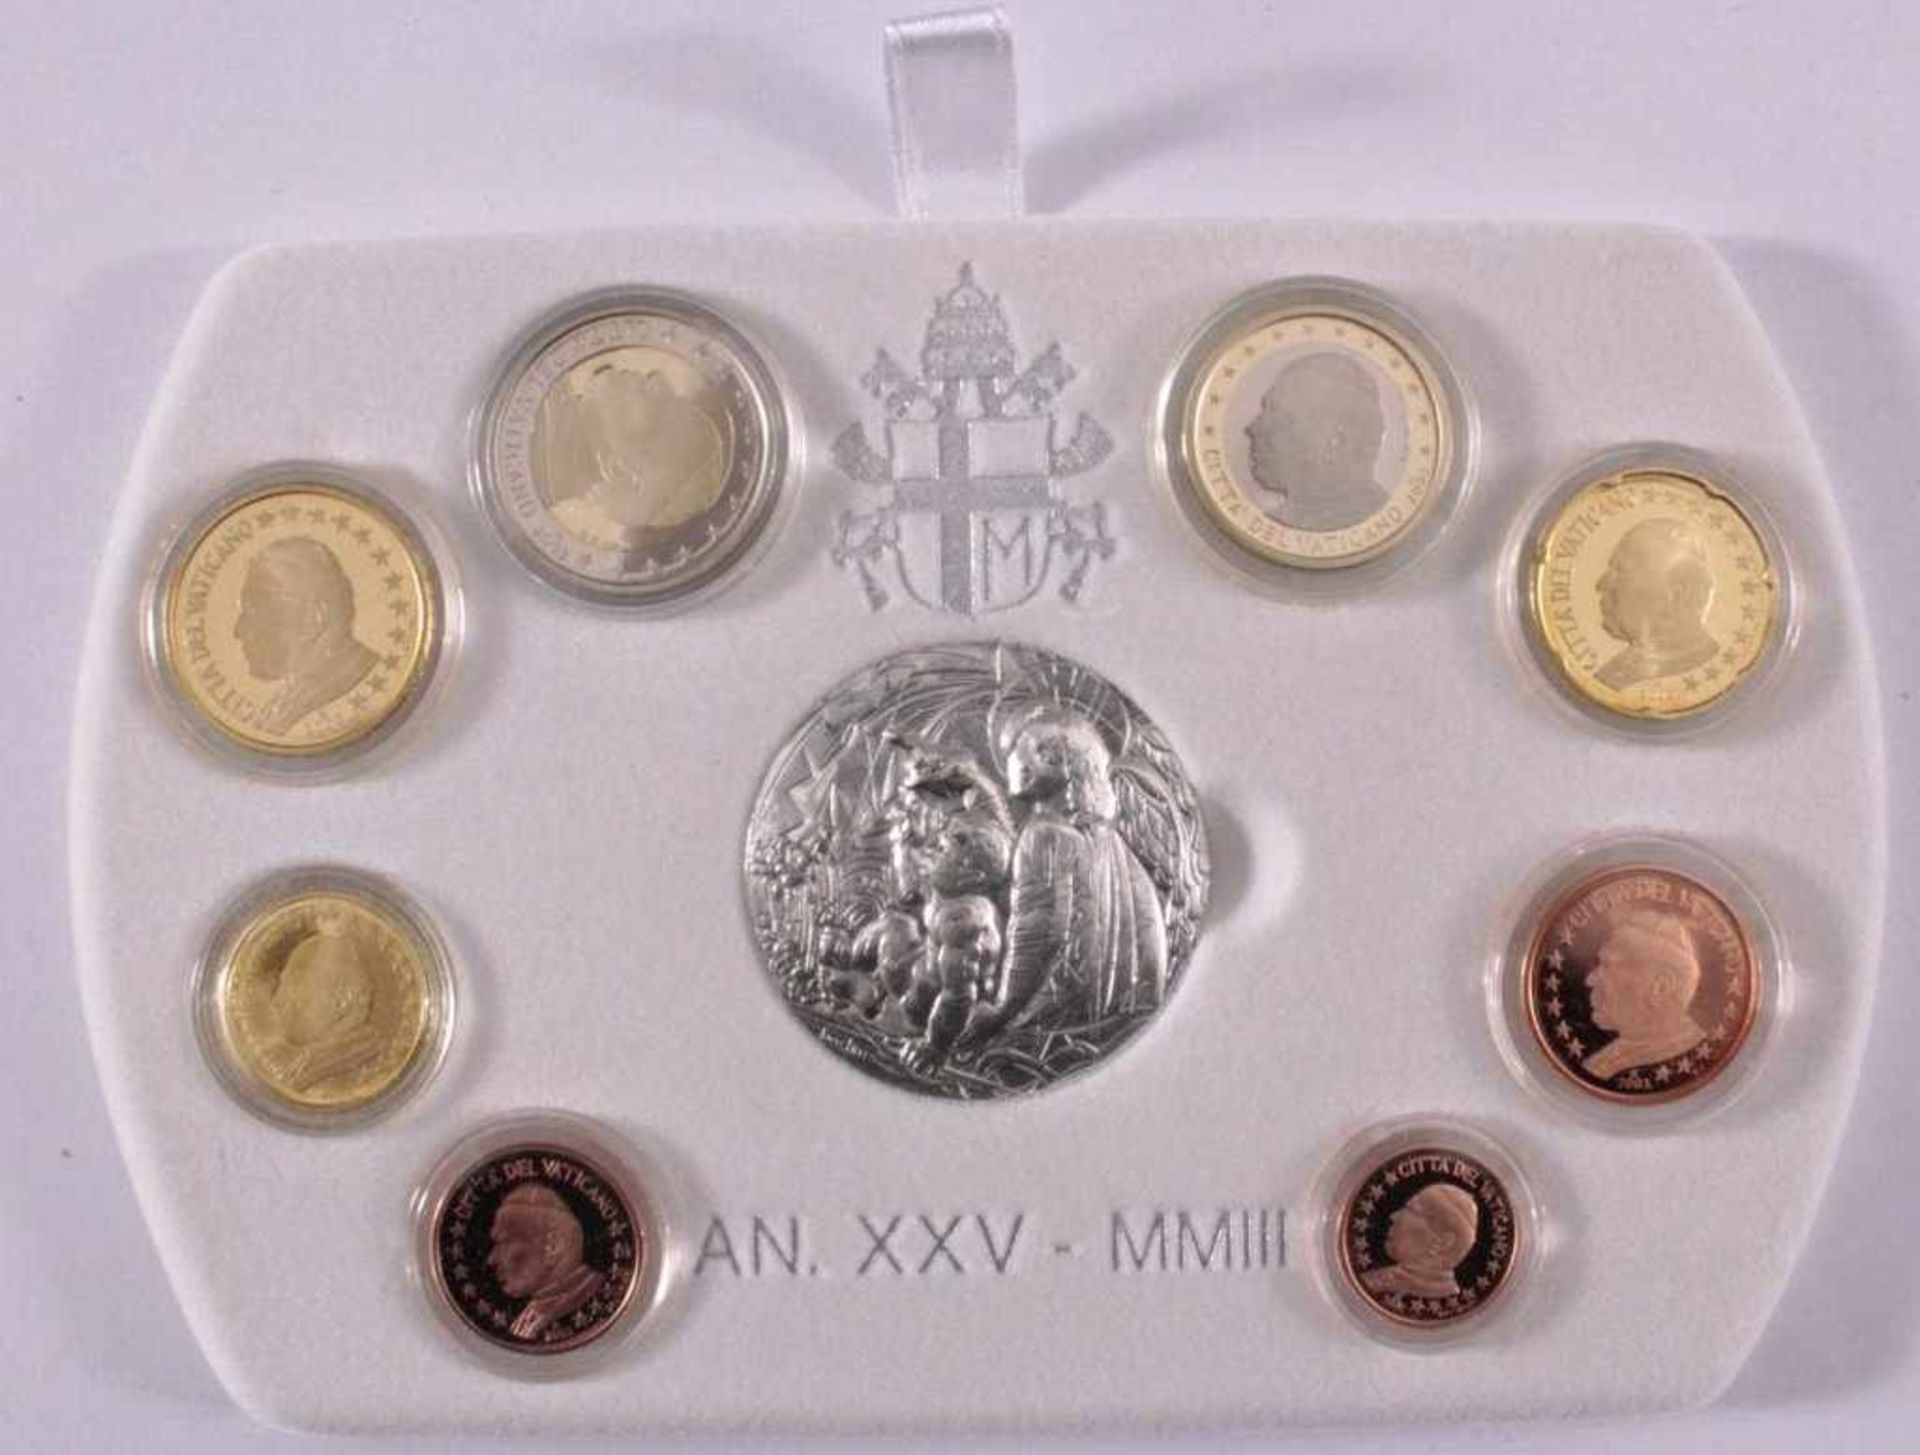 Vatikan KMS 2003Inklusive 925er Silbermedaille in Originaletui - Image 2 of 3